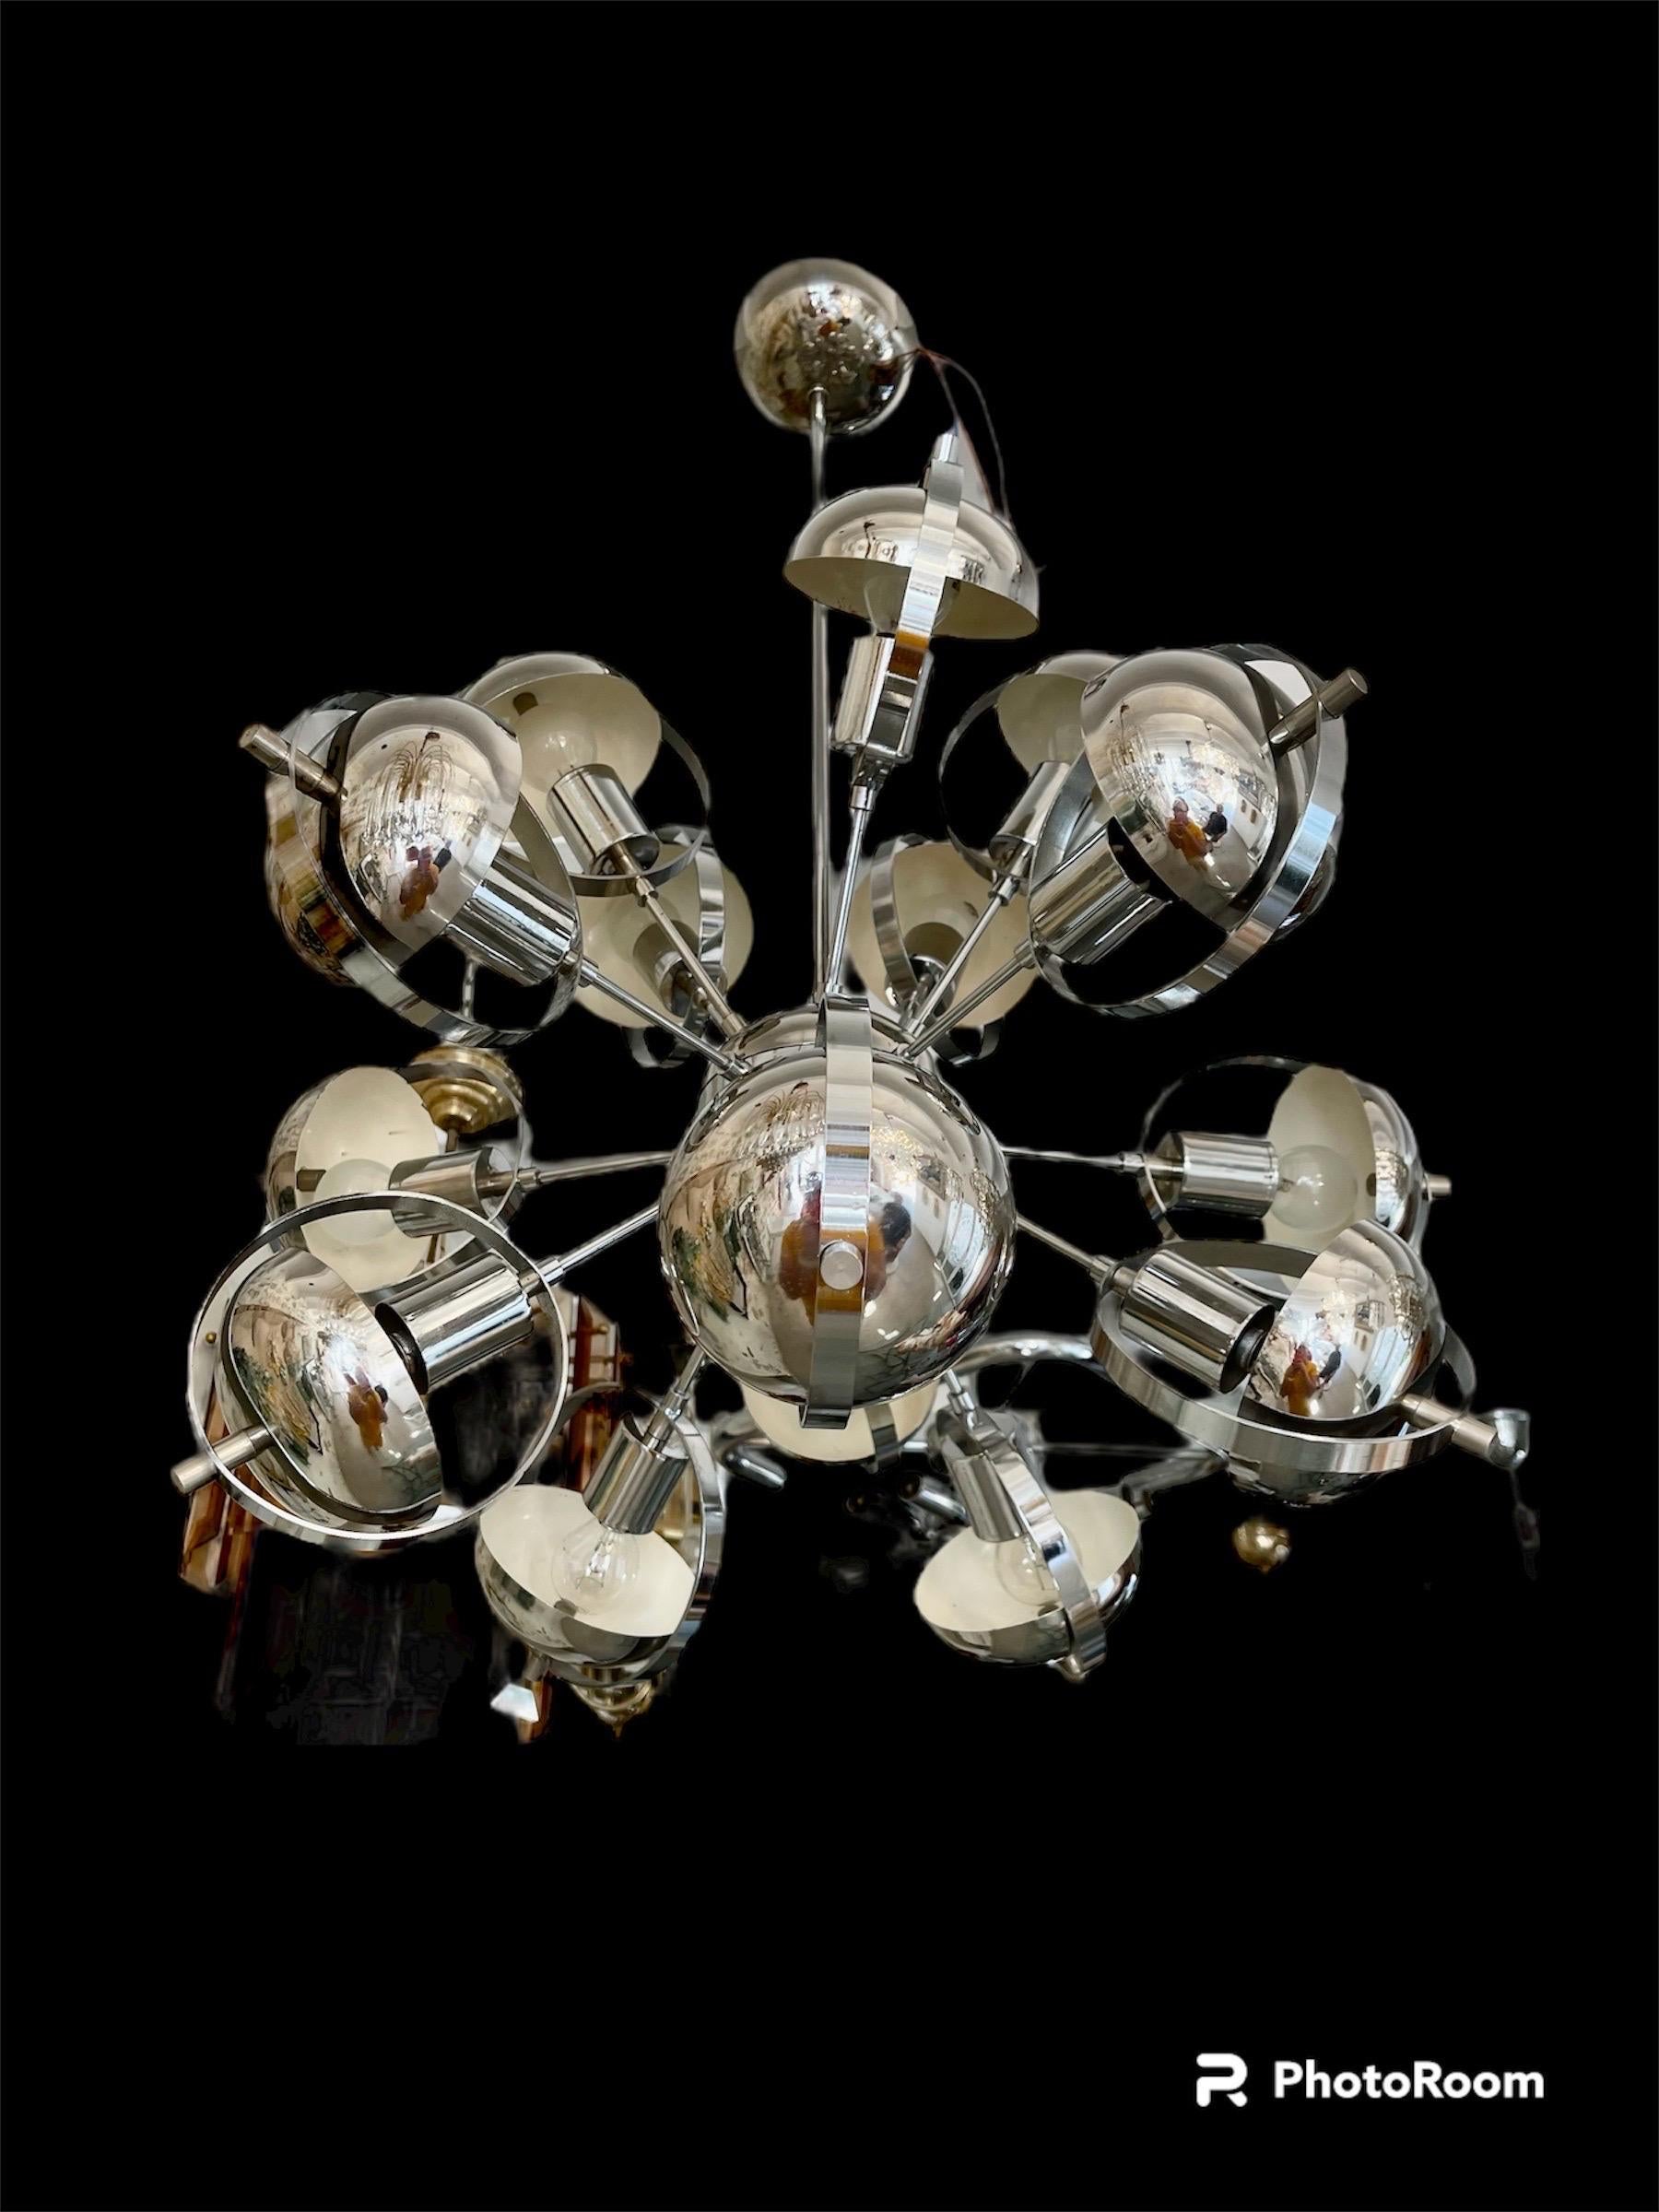 Der italienische Unternehmer Goffredo Reggiani gründete in den frühen 1950er Jahren das Unternehmen Reggiani Illuminazione. Er begann die Produktion mit dekorativen Lampen, für die er die Prototypen entwarf. Sein Perfektionismus führte schnell dazu,